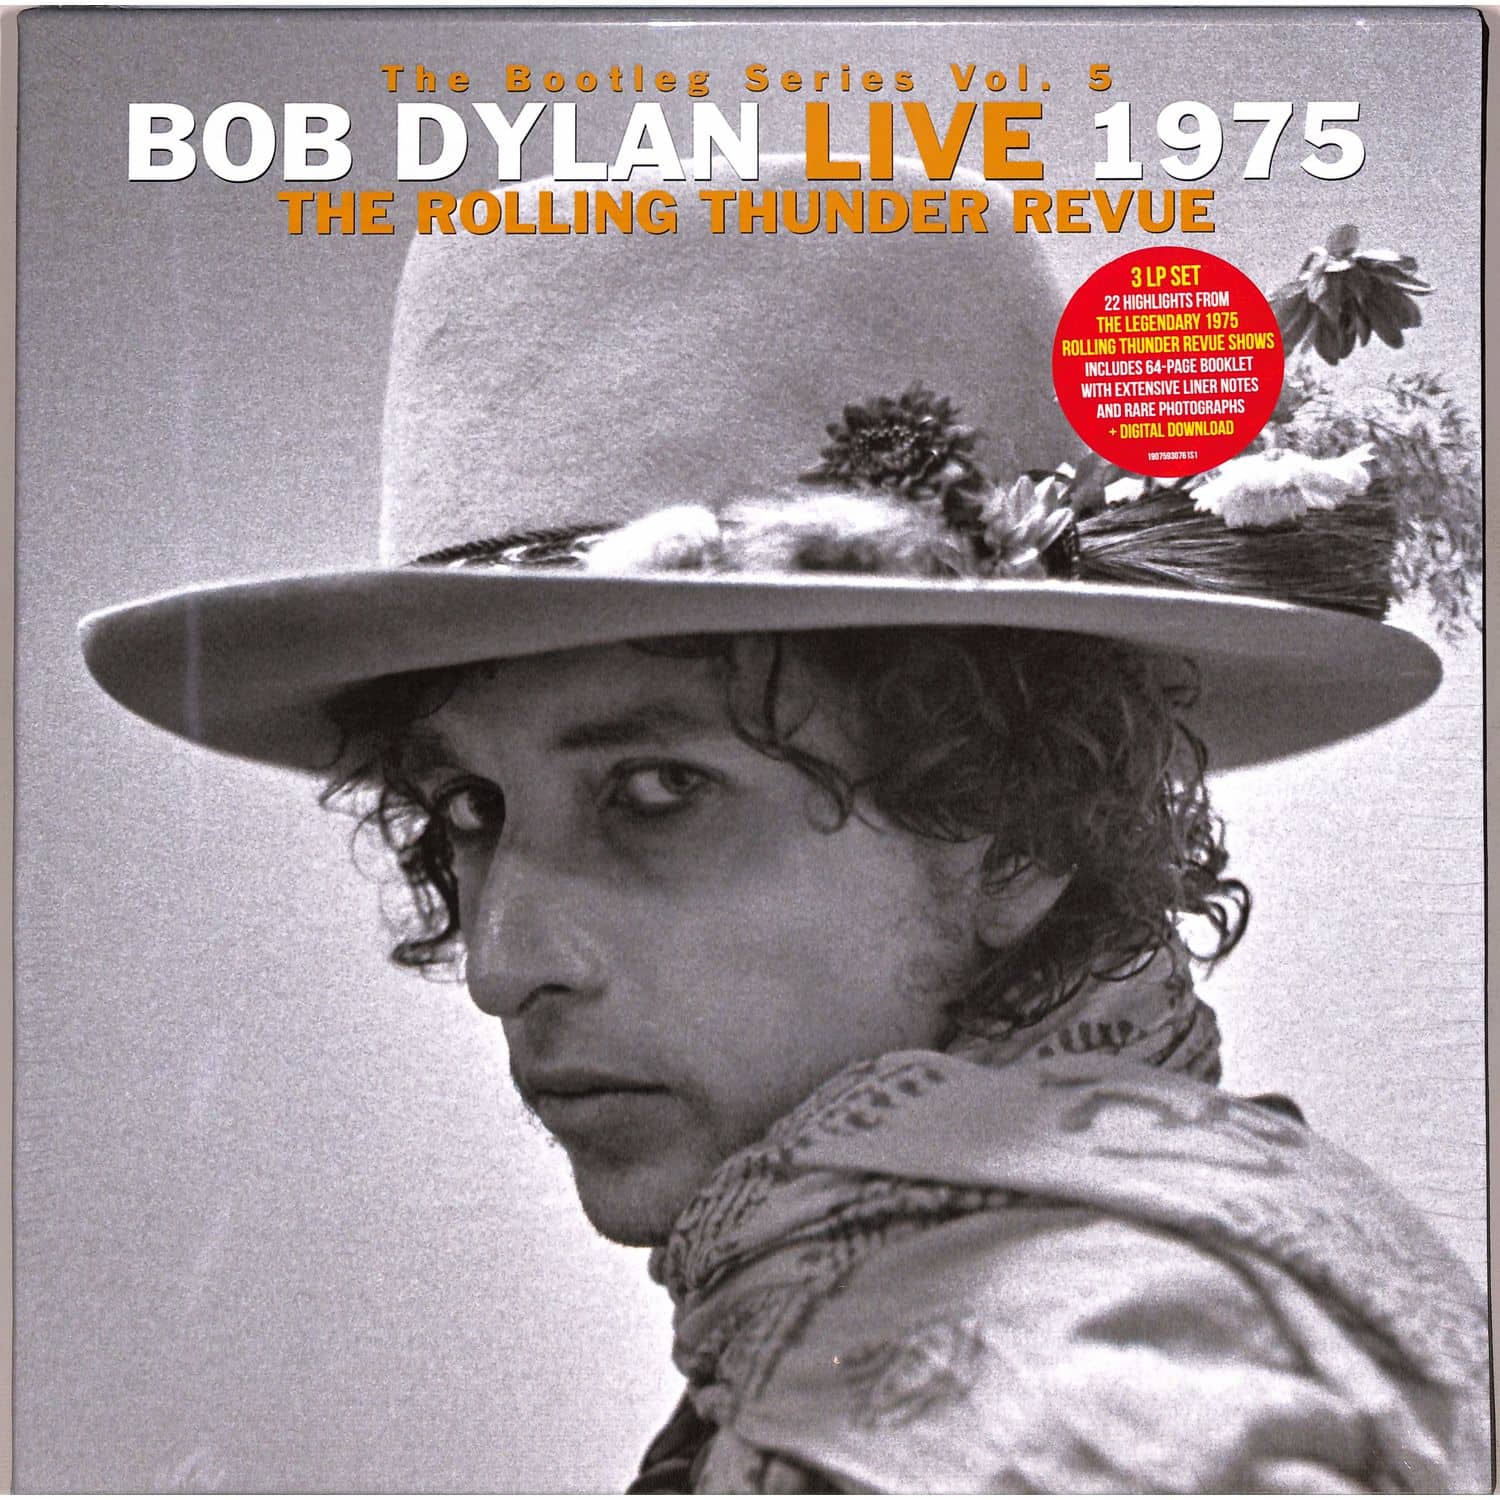 Bob Dylan - THE BOOTLEG SERIES VOL.5: BOB DYLAN LIVE 1975,TH 